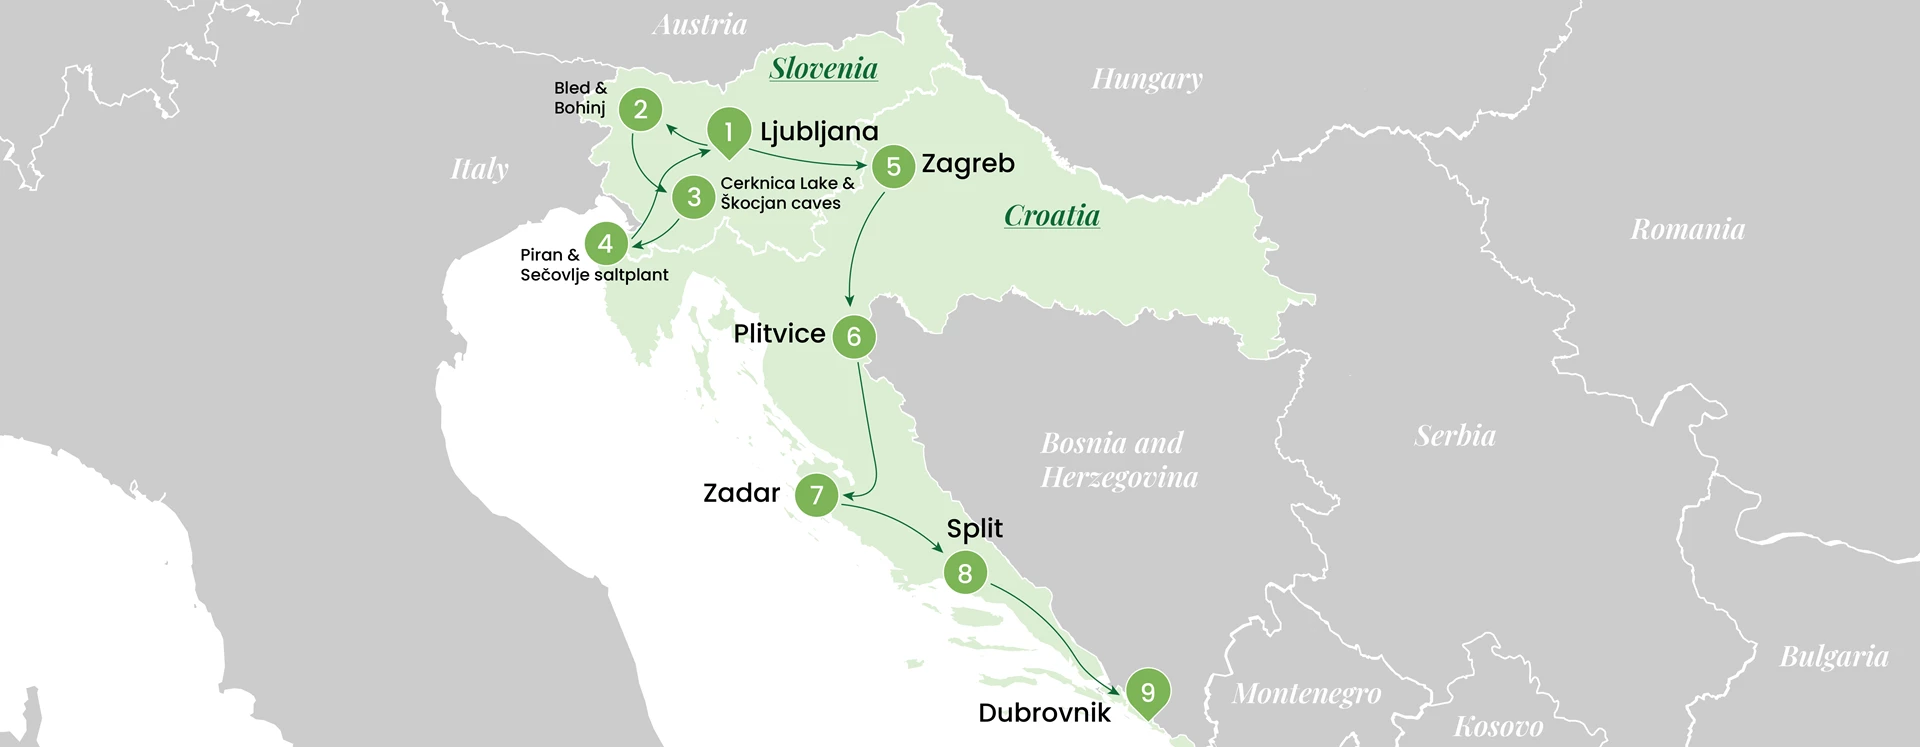 Slovenia and Croatia tour